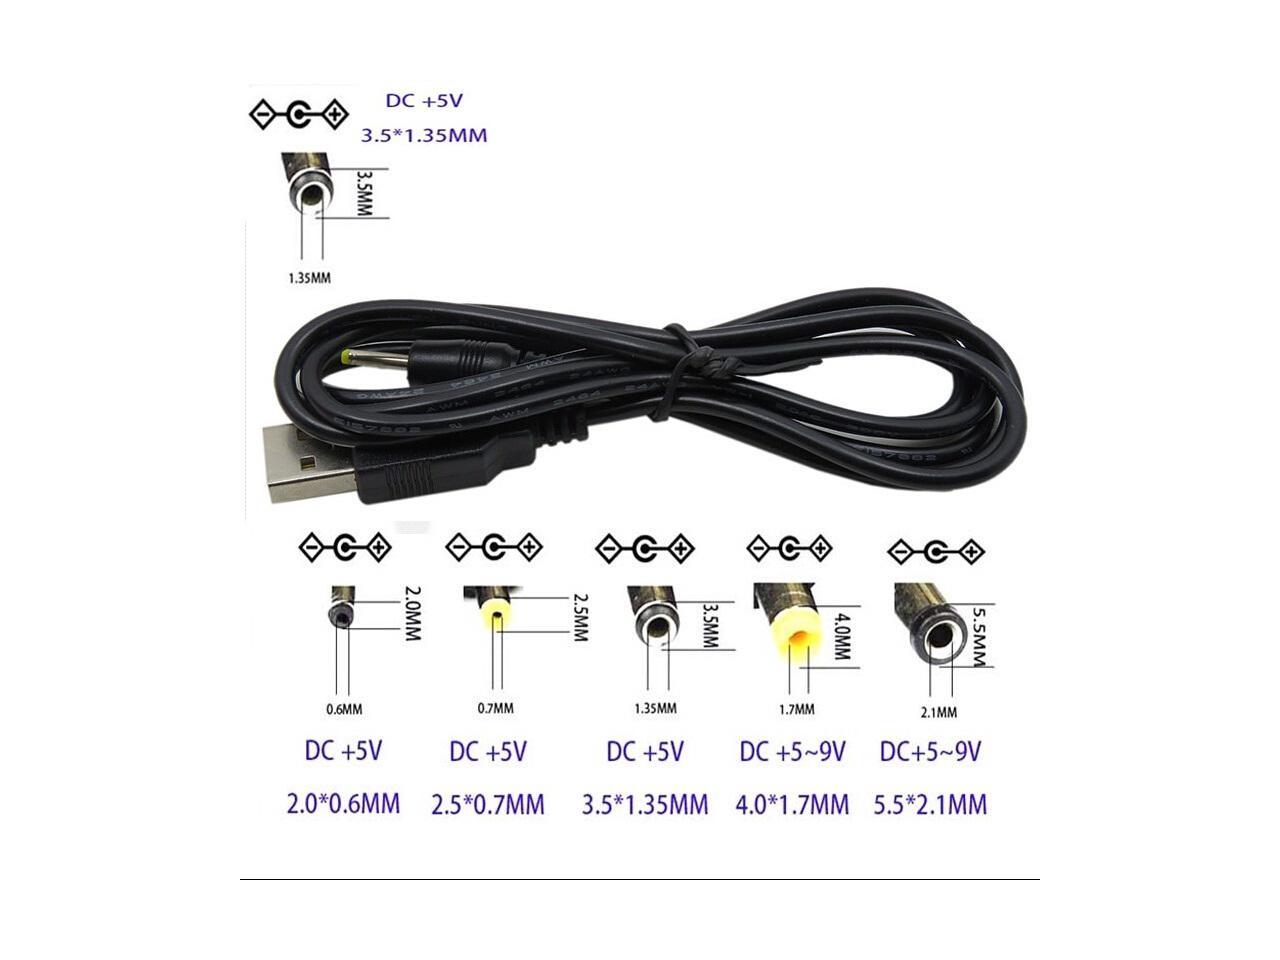 bekymring Forretningsmand høste CableDeconn USB to 3.5 mm/1.35 mm 5 Volt DC Barrel Jack Power Cable -  Newegg.com